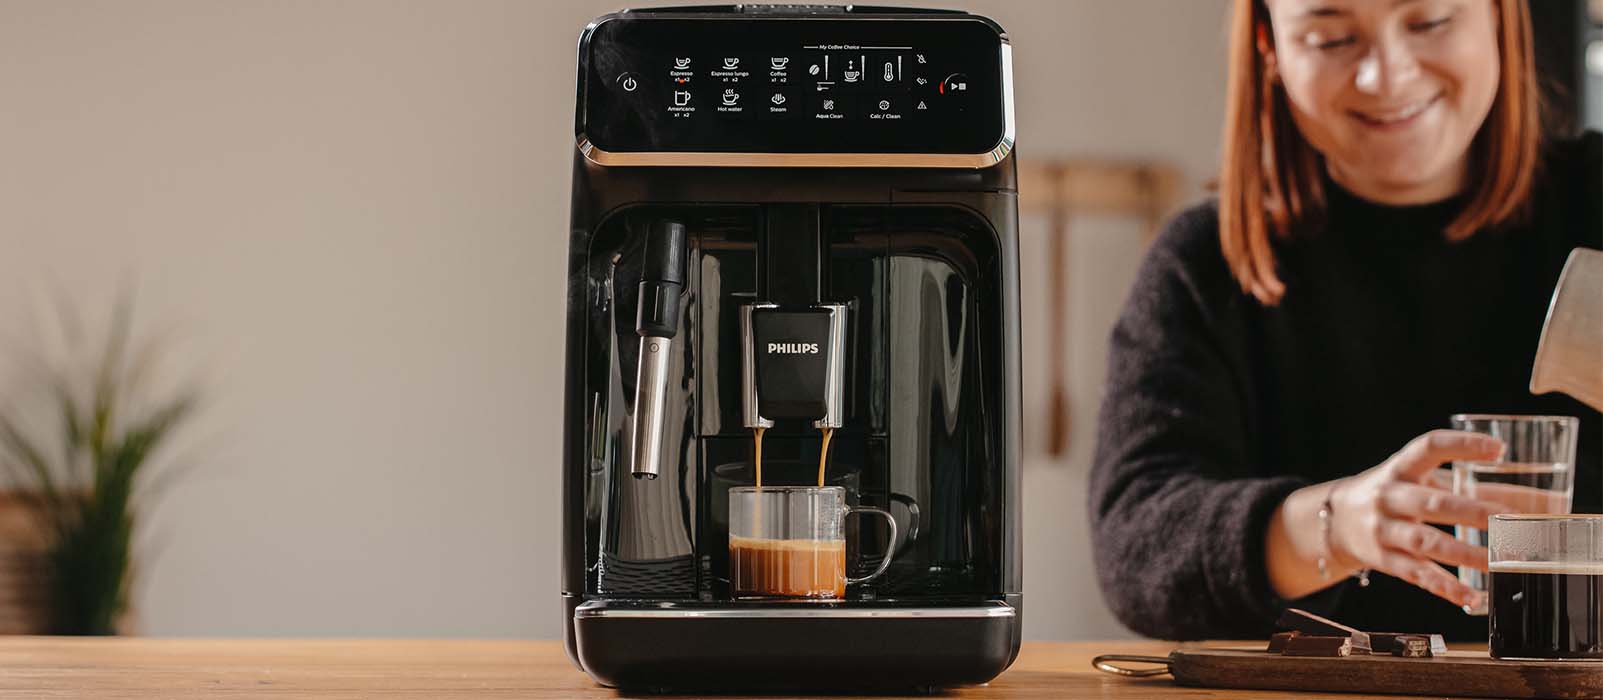 Quelles sont les meilleures machines à café à grains à choisir ?